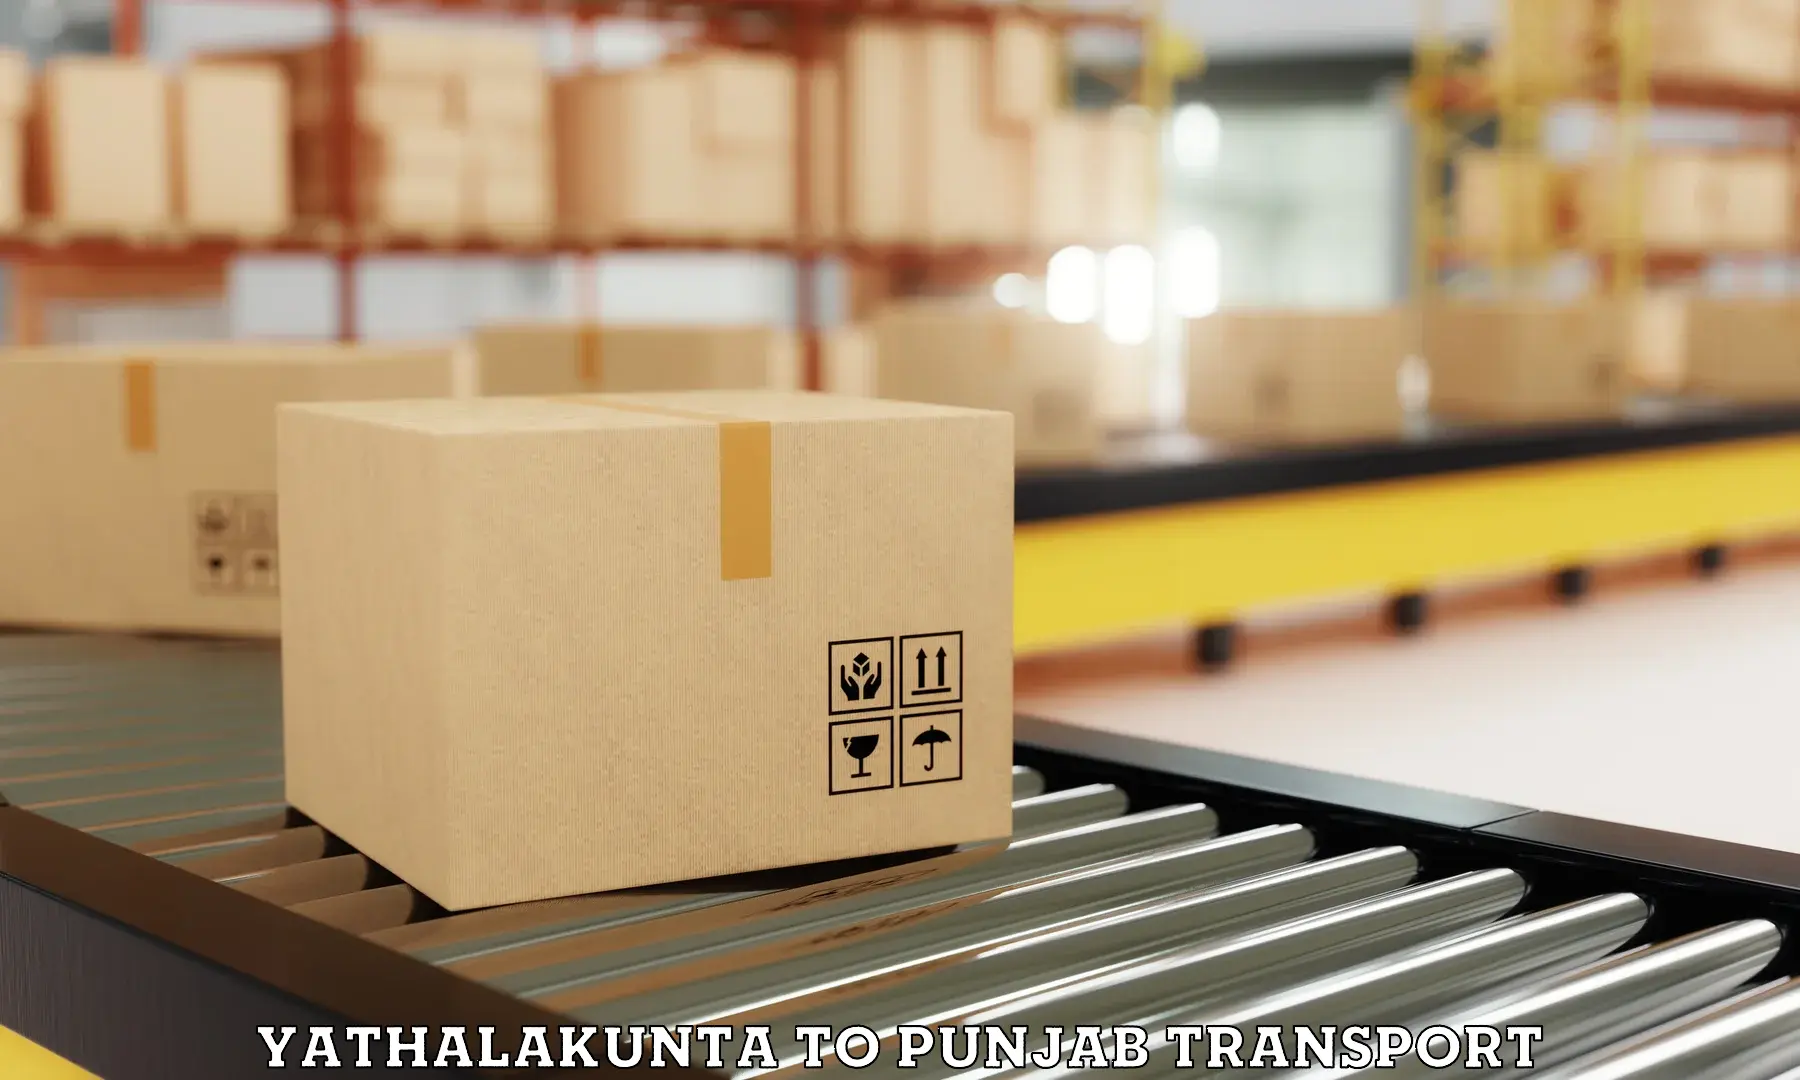 Furniture transport service Yathalakunta to Pathankot